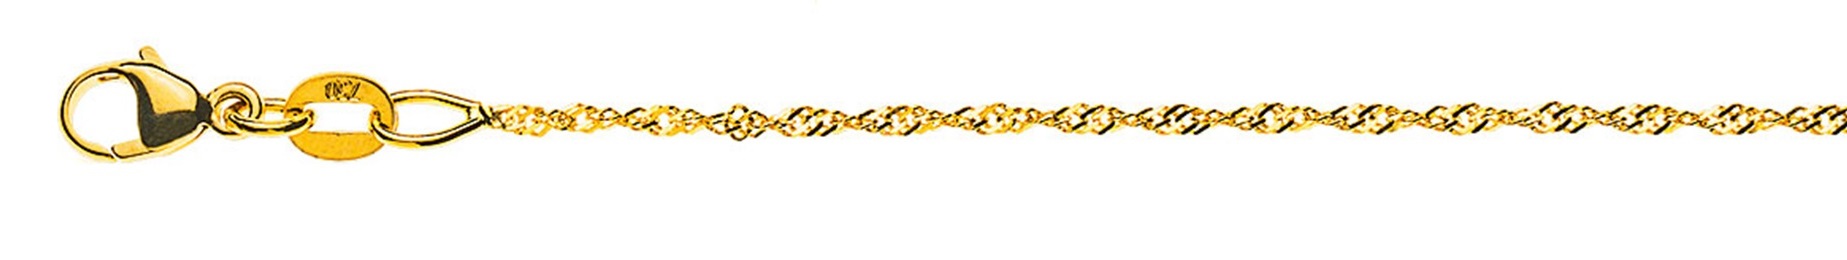 AURONOS Prestige Necklace Yellow Gold 18K Singapore Chain 50cm 1.2mm